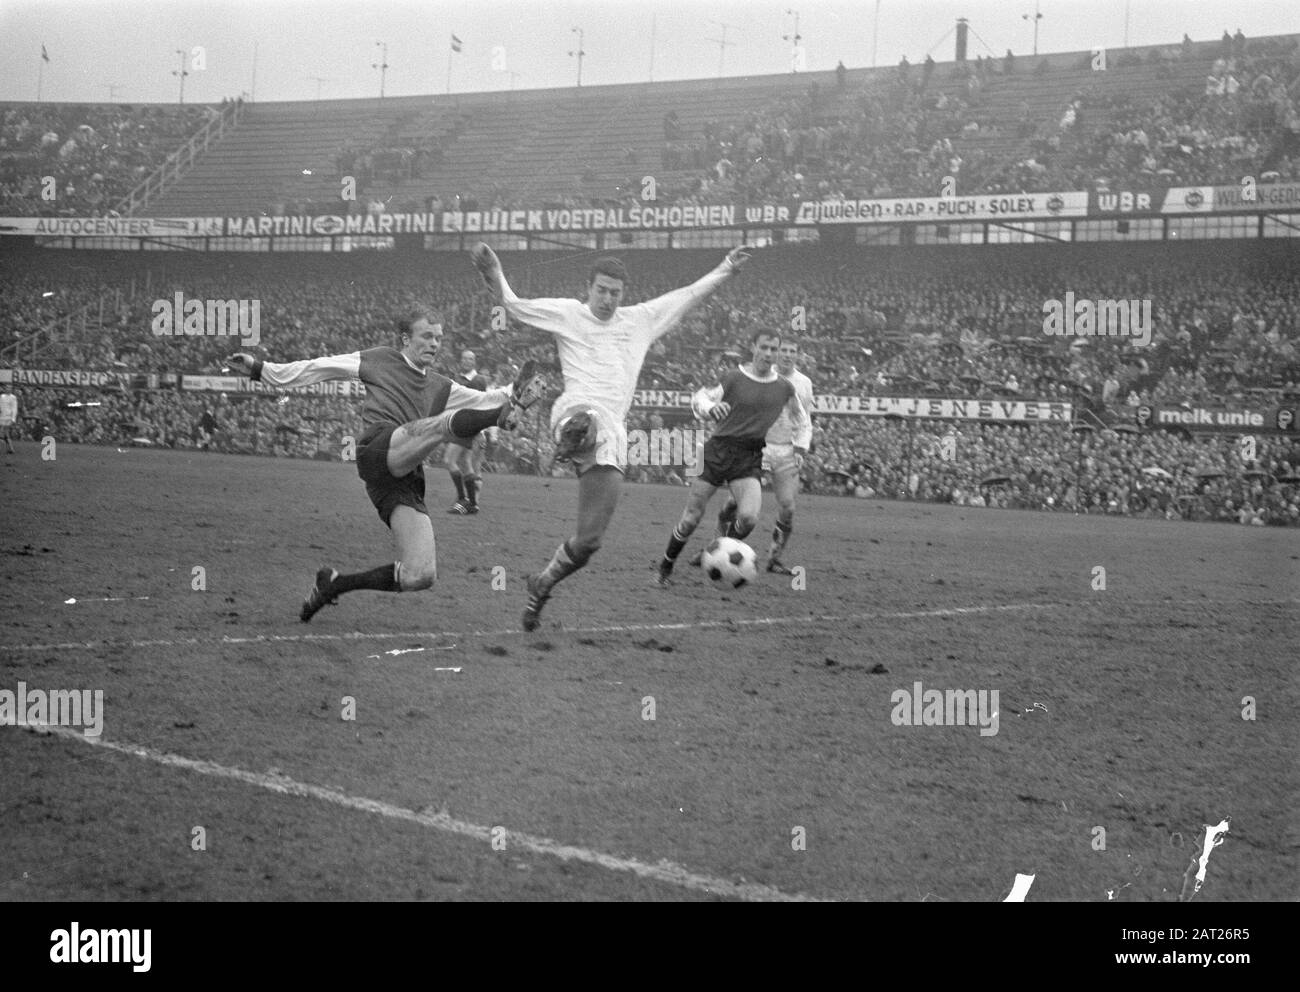 Feyenoord Against Go Ahead 4-0 Geels kommt nur ein wenig zu spät zum Ergebnis, richtig Kindvall Datum: 30. März 1969 Schlüsselwörter: Sport, Fußball persönlicher Name: Geels, Ruud, Kindvall, Ove Institution Name: Feyenoord Stockfoto